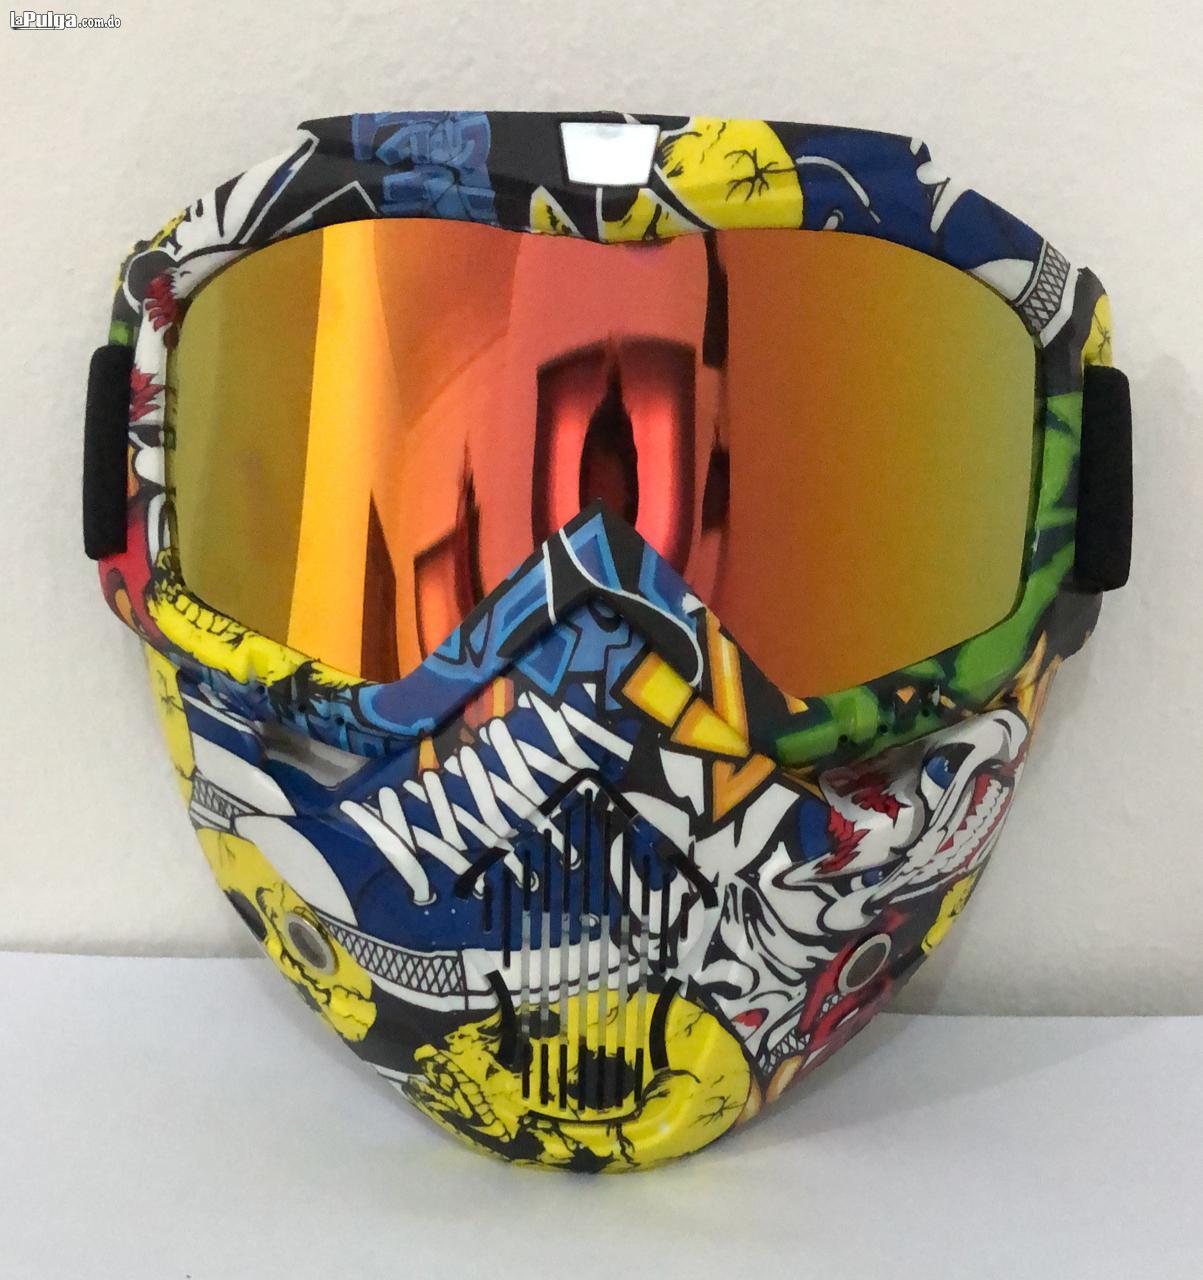 Mascara Protección Motor Motocross Bicicleta Lentes Buggies Careta Foto 6792910-1.jpg